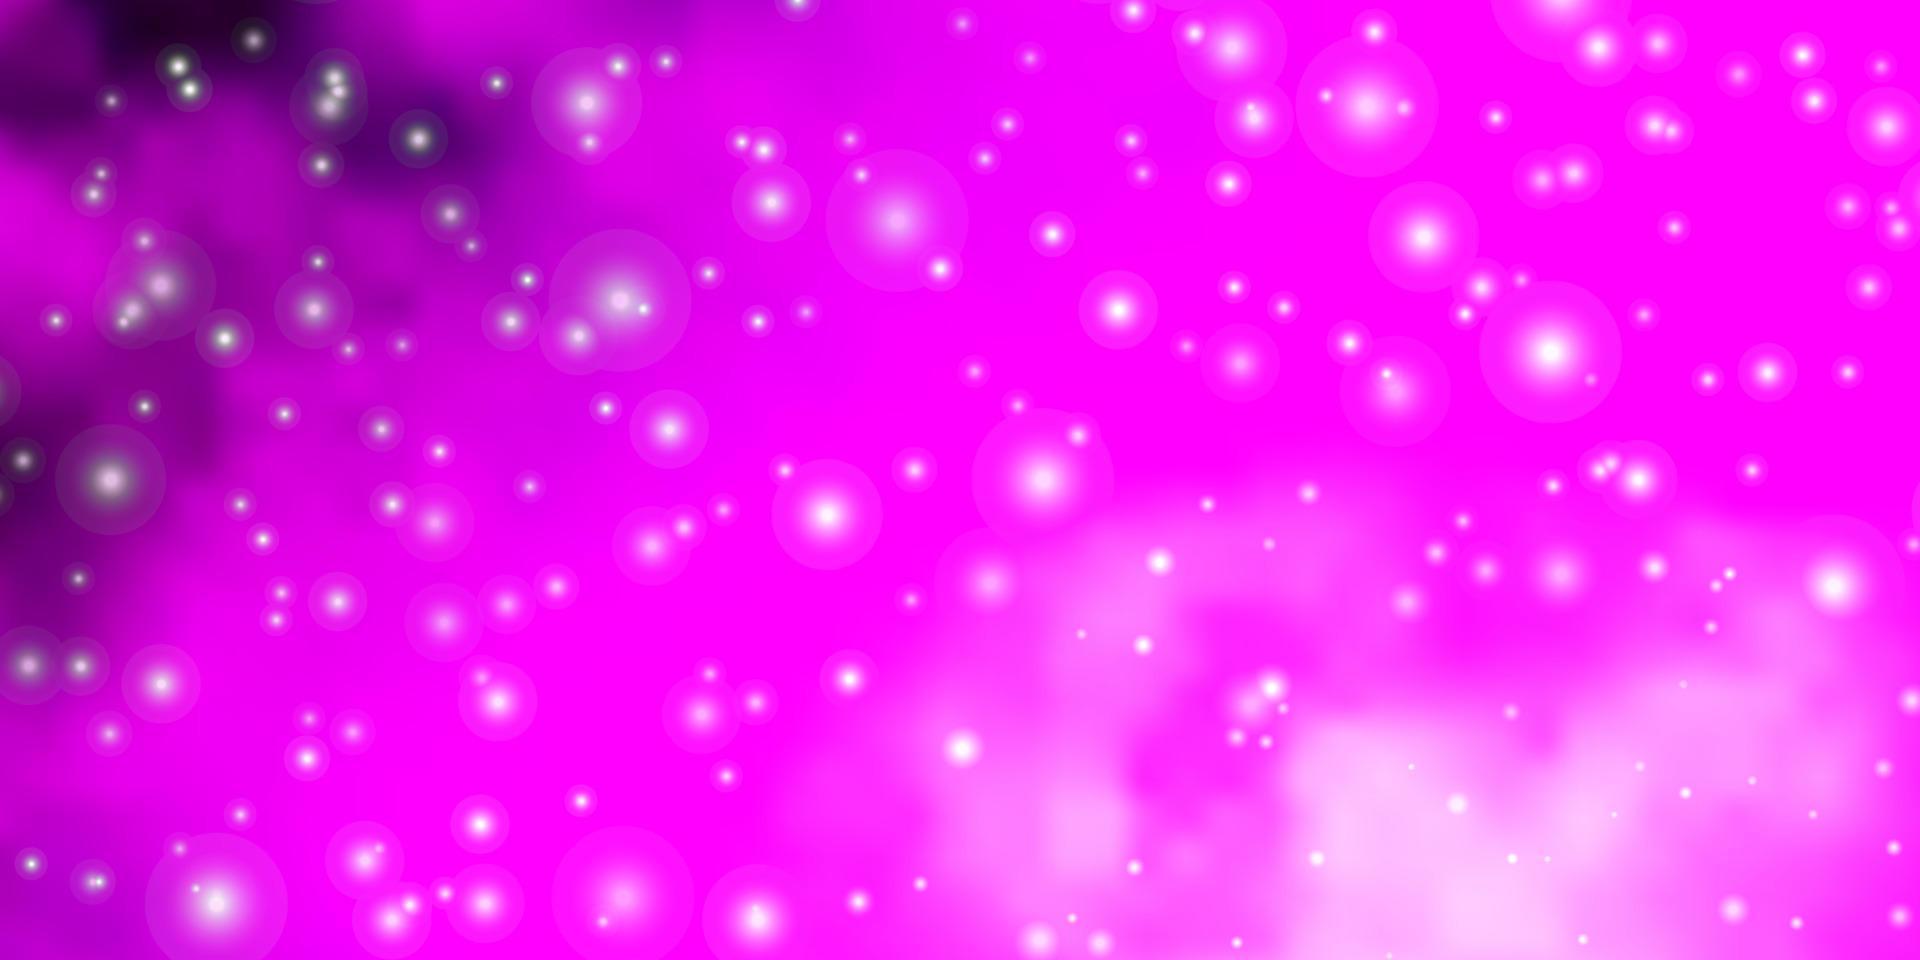 trama vettoriale rosa chiaro con bellissime stelle.